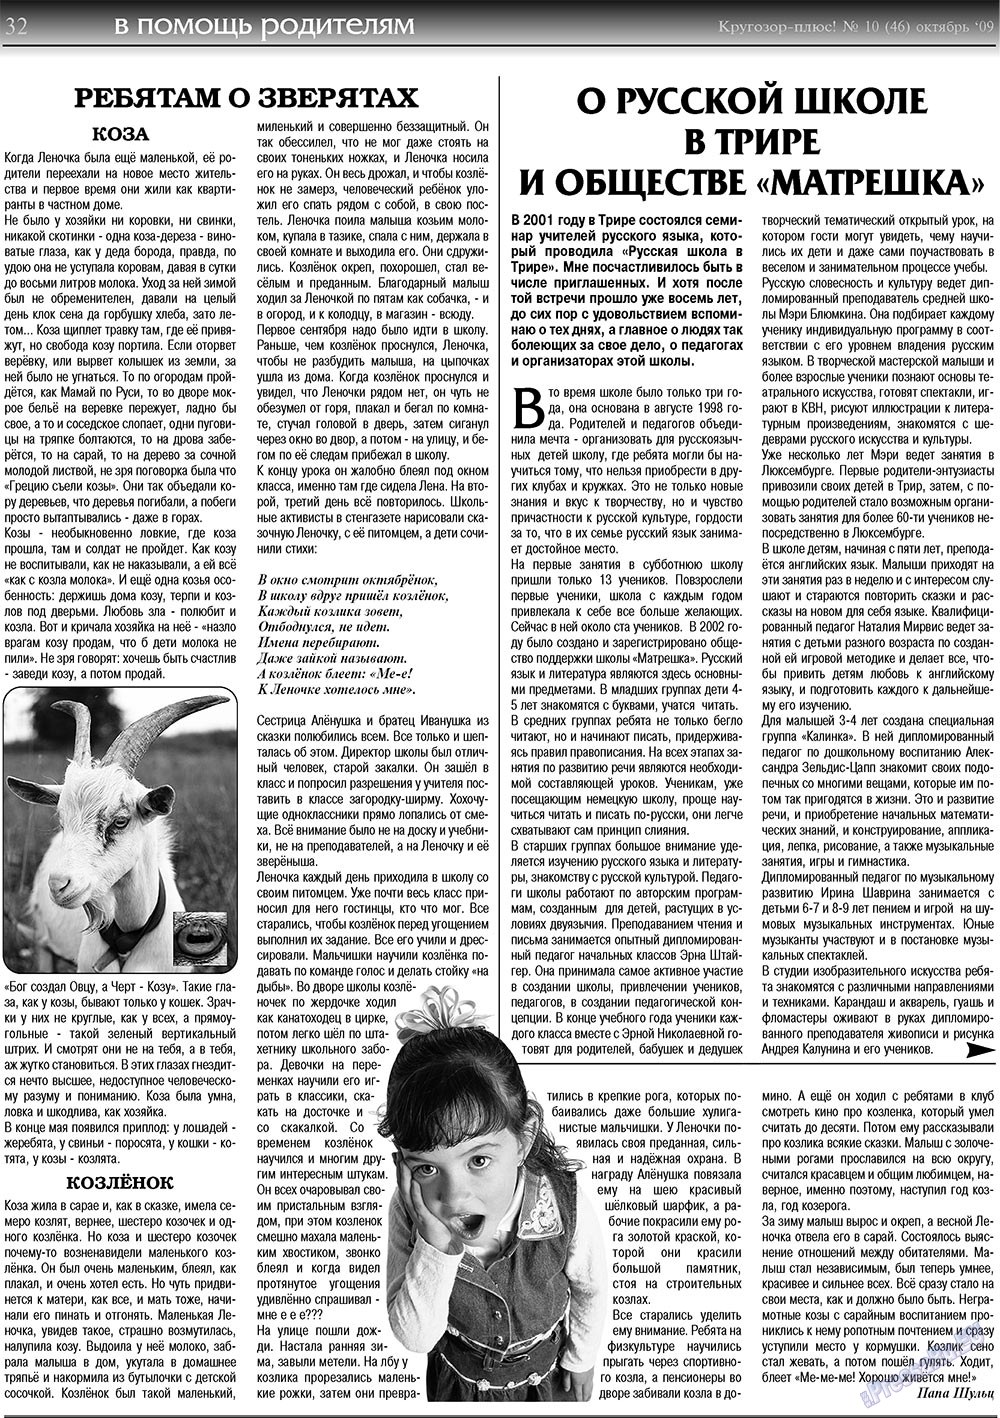 Кругозор плюс!, газета. 2009 №10 стр.32